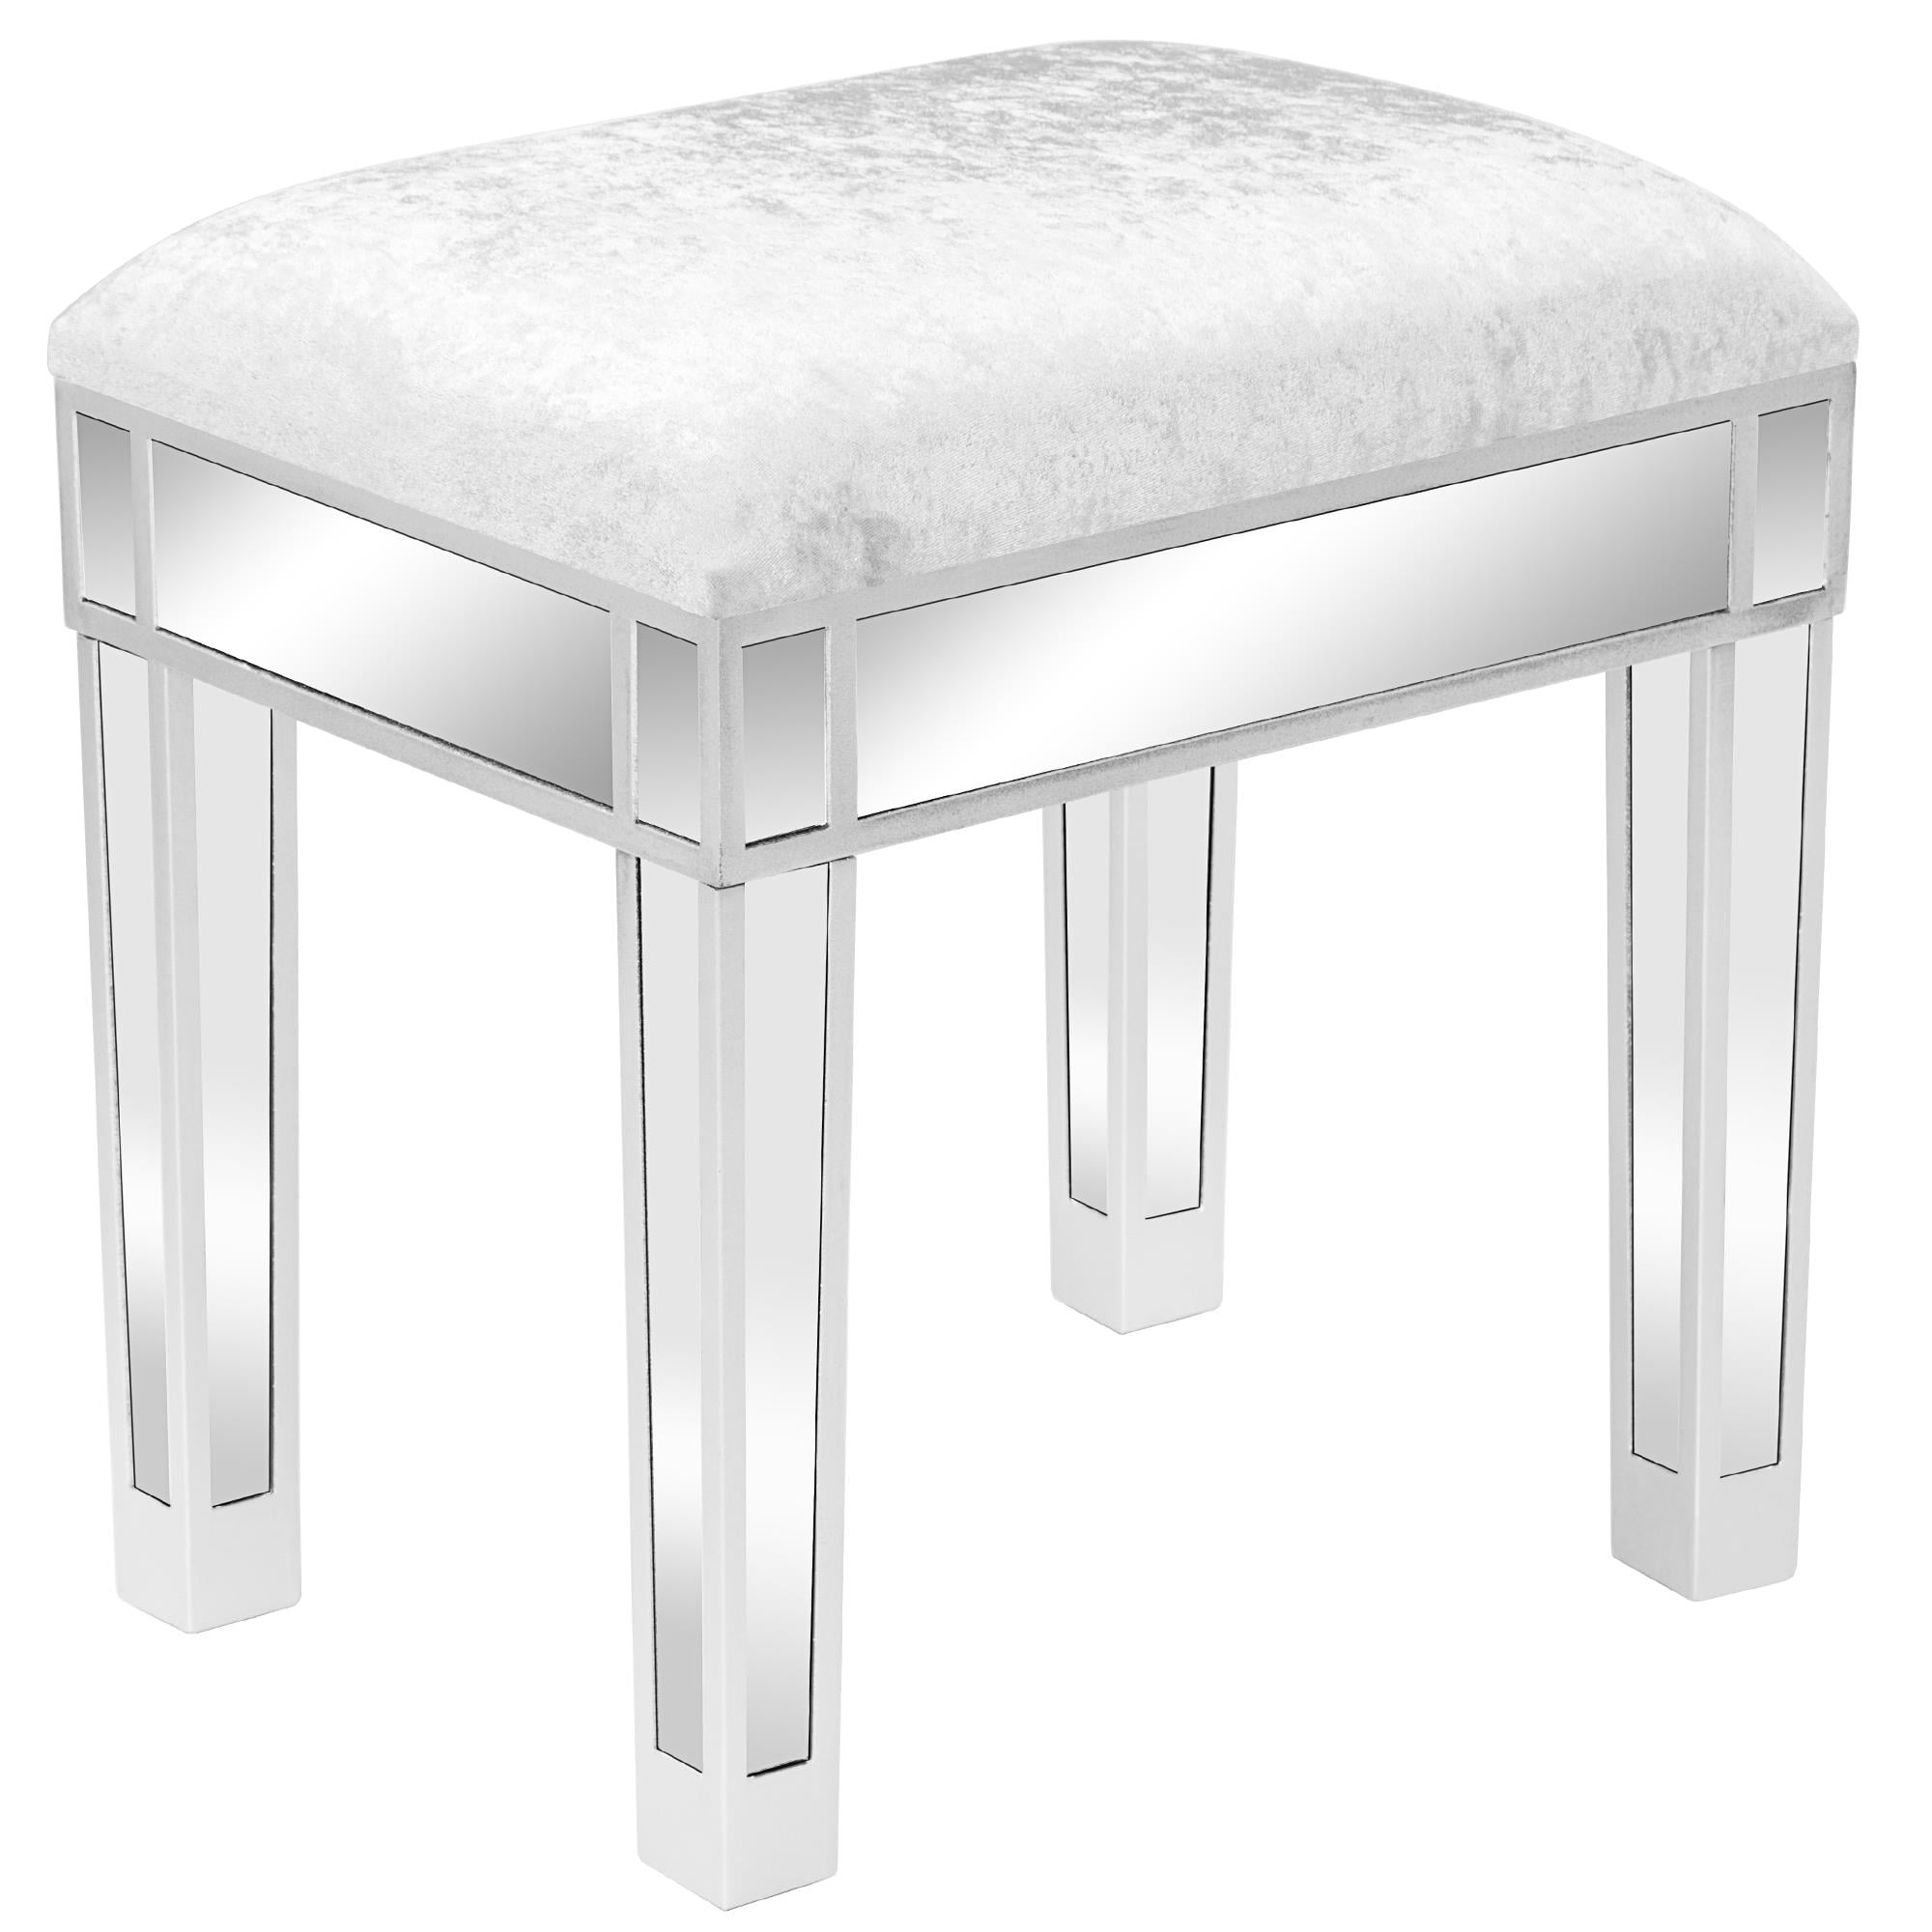 NEW Velvet Footstool Bench Dressing Table Stool Makeup Vanity Stool Chrome Legs 